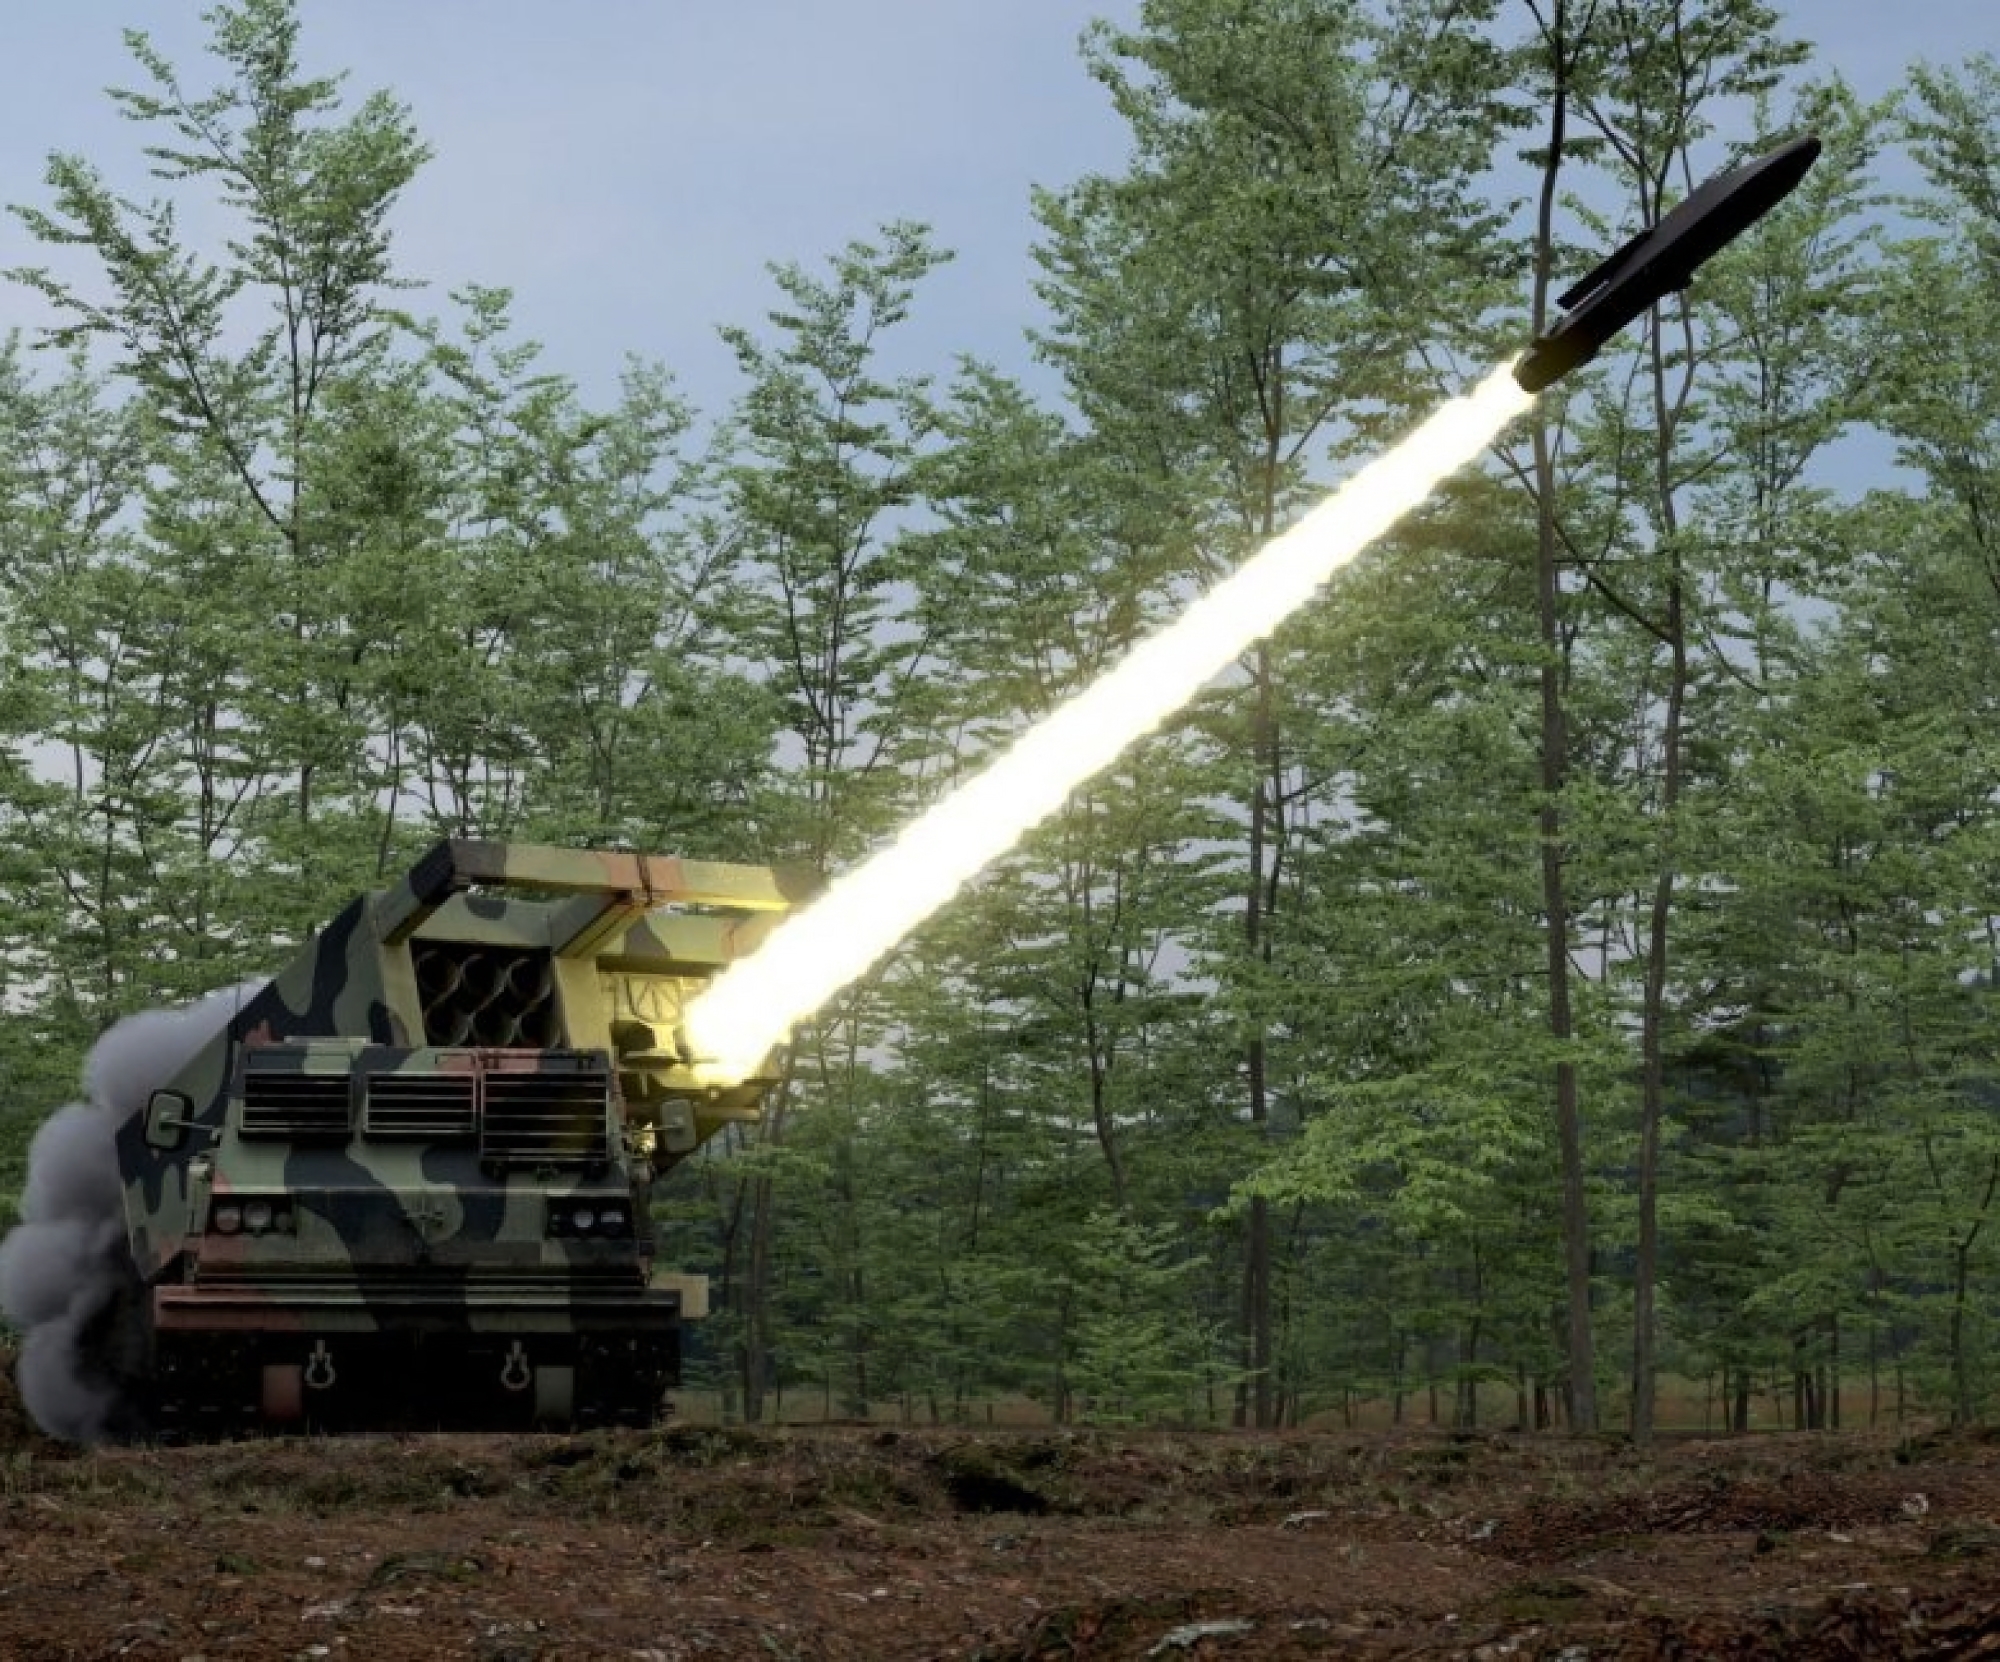 De VS is van plan clustermunitie voor MLRS aan Oekraïne te leveren. Dit zouden DPICM-projectielen voor HIMARS kunnen zijn met een bereik tot 45 km.